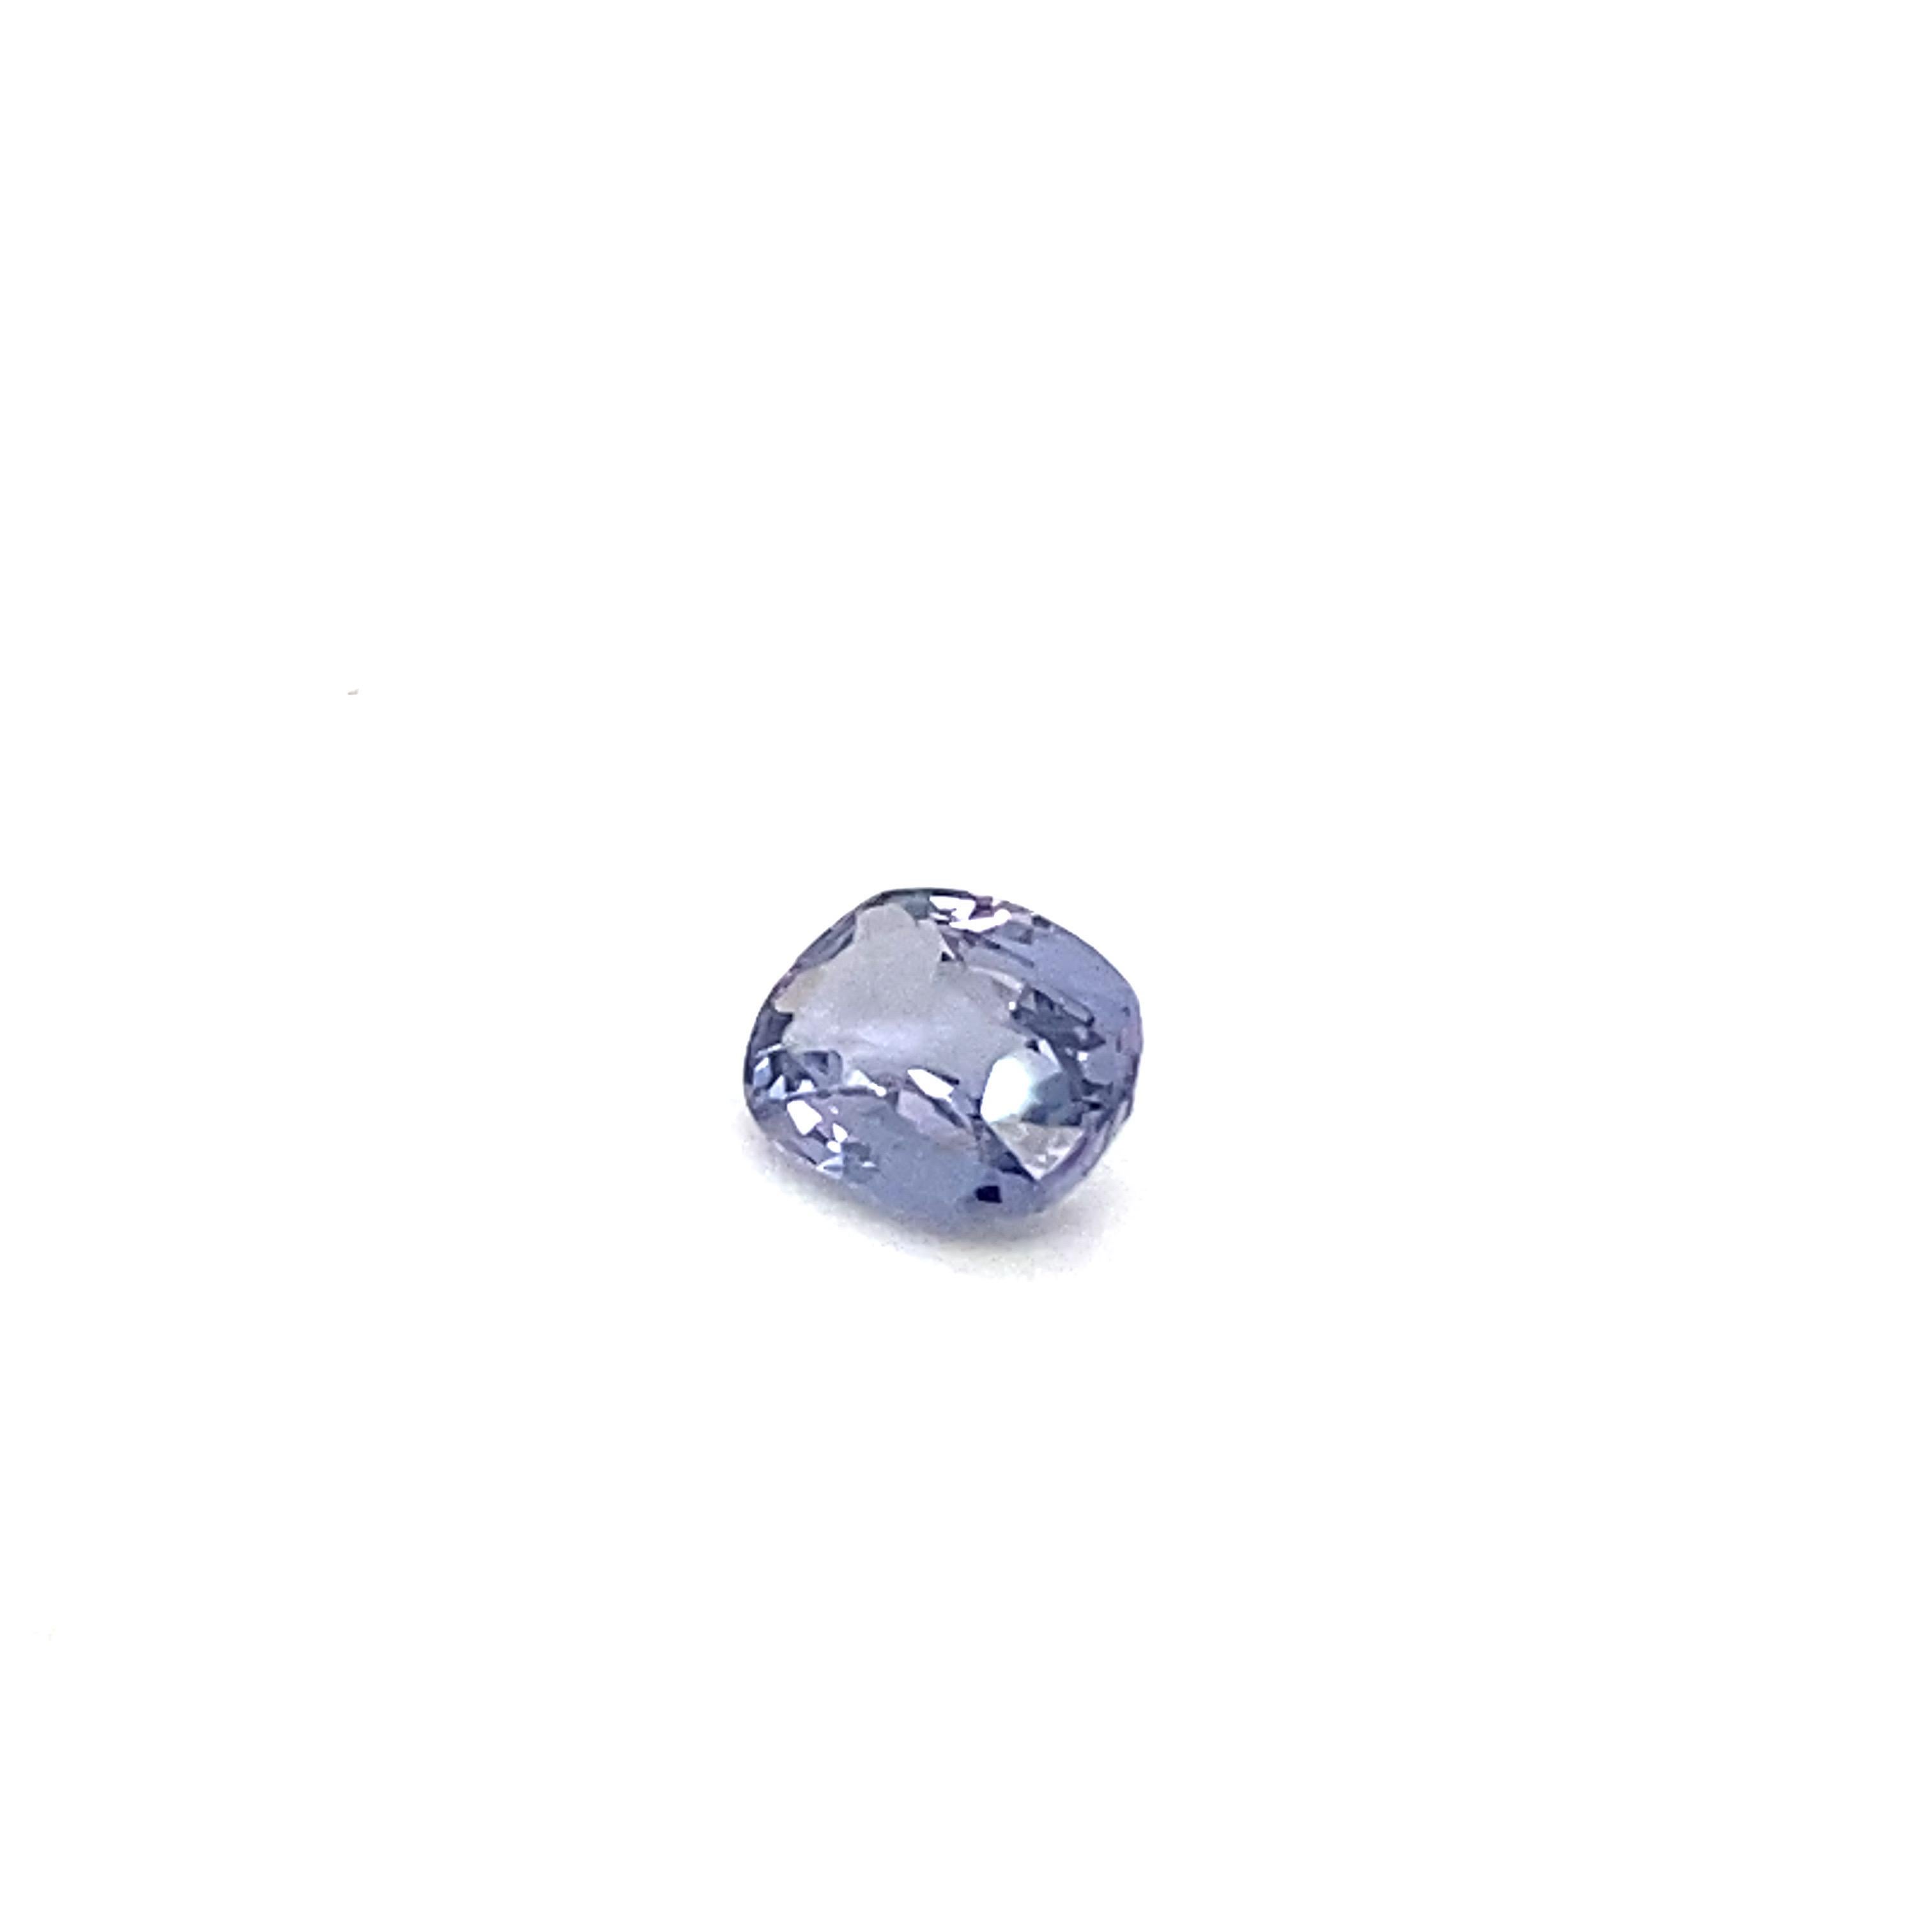 Artisan 1.6 Carat Oval Shape Natural Violet Spinel Loose Gemstone For Sale